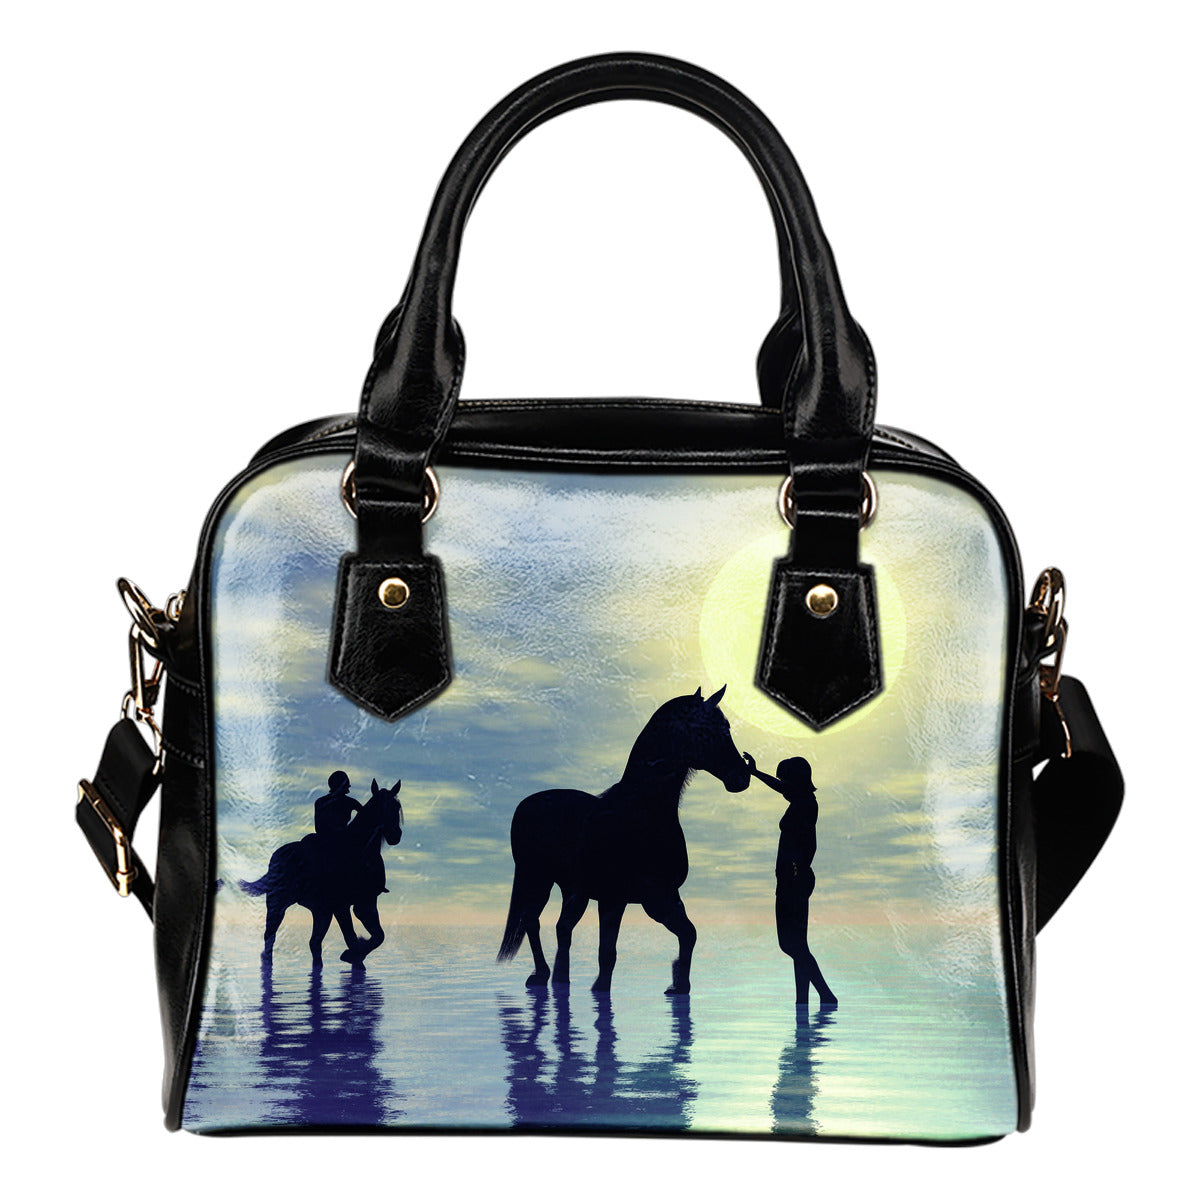 Horses In Water Shoulder Handbag